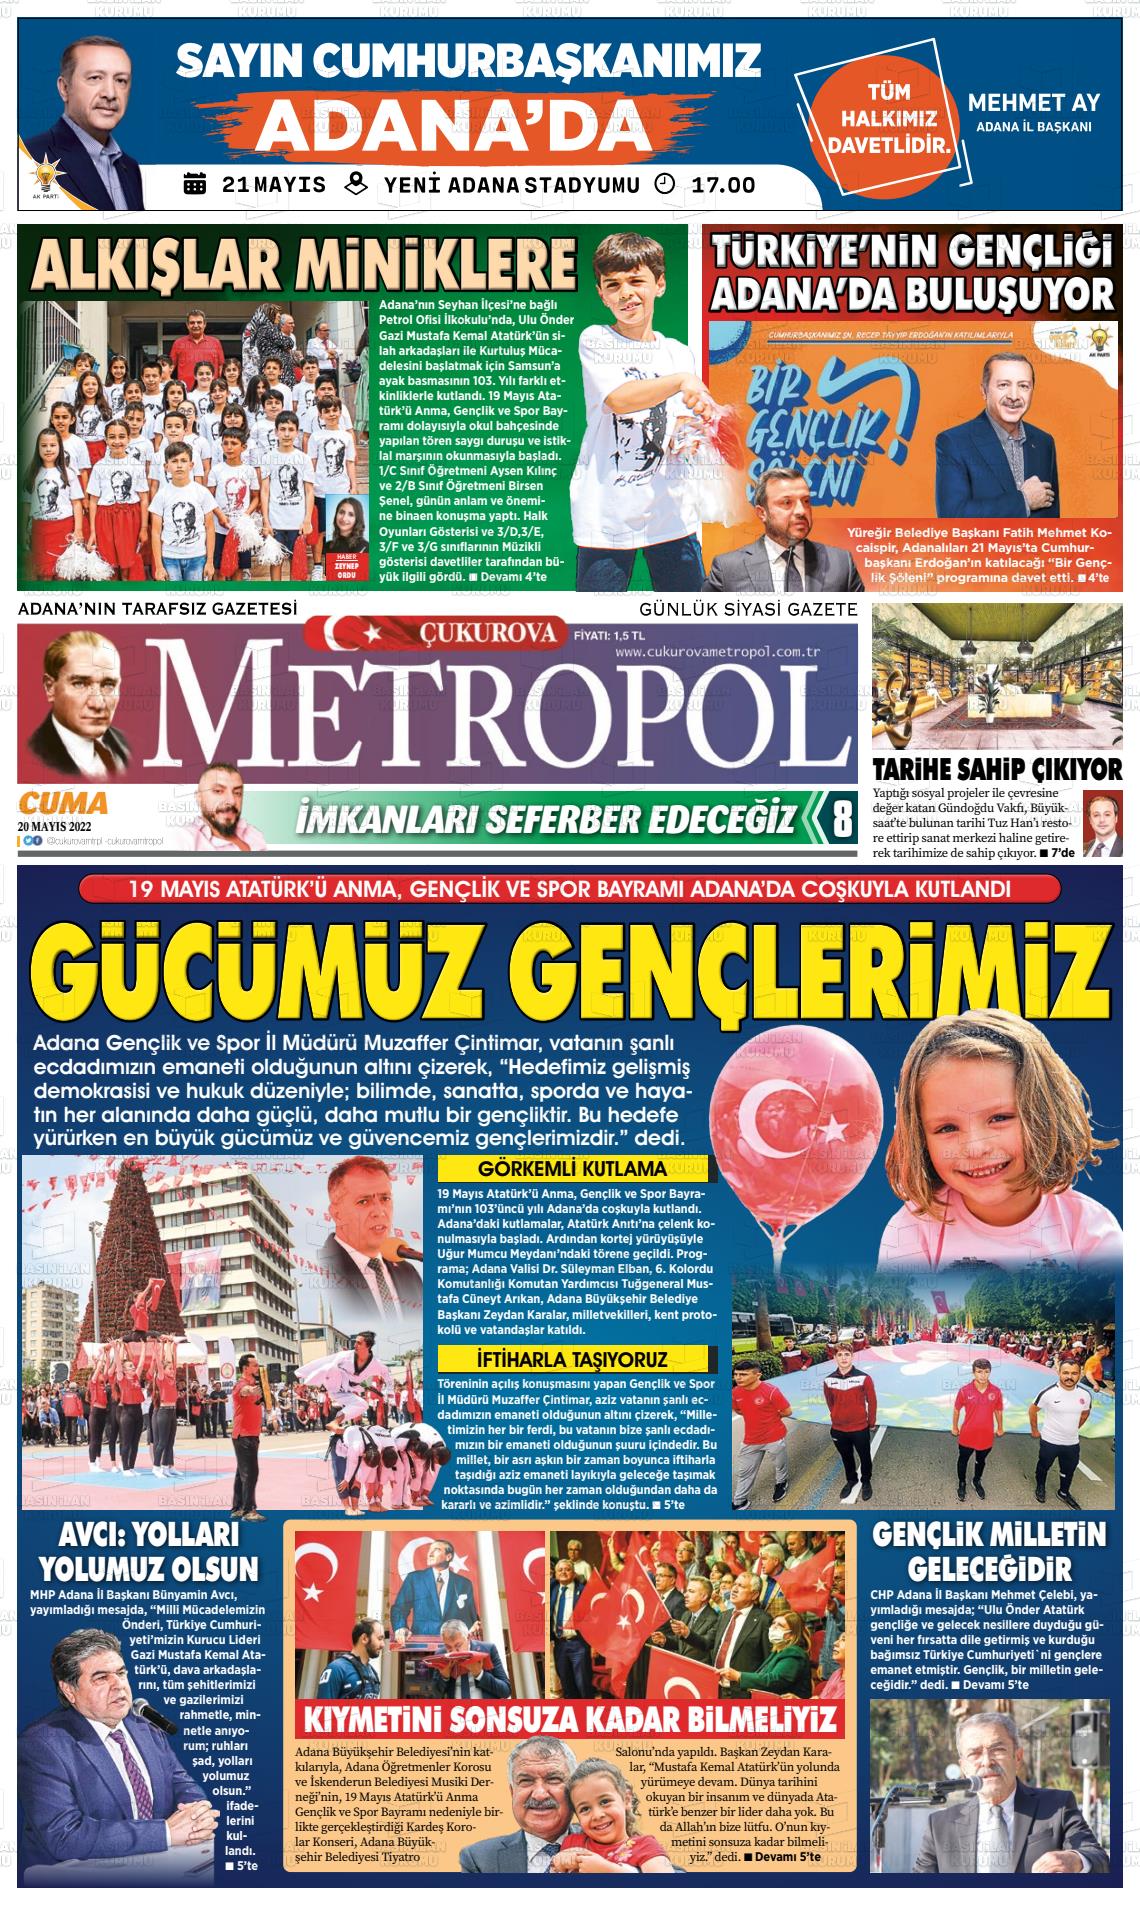 20 Mayıs 2022 Çukurova Metropol Gazete Manşeti